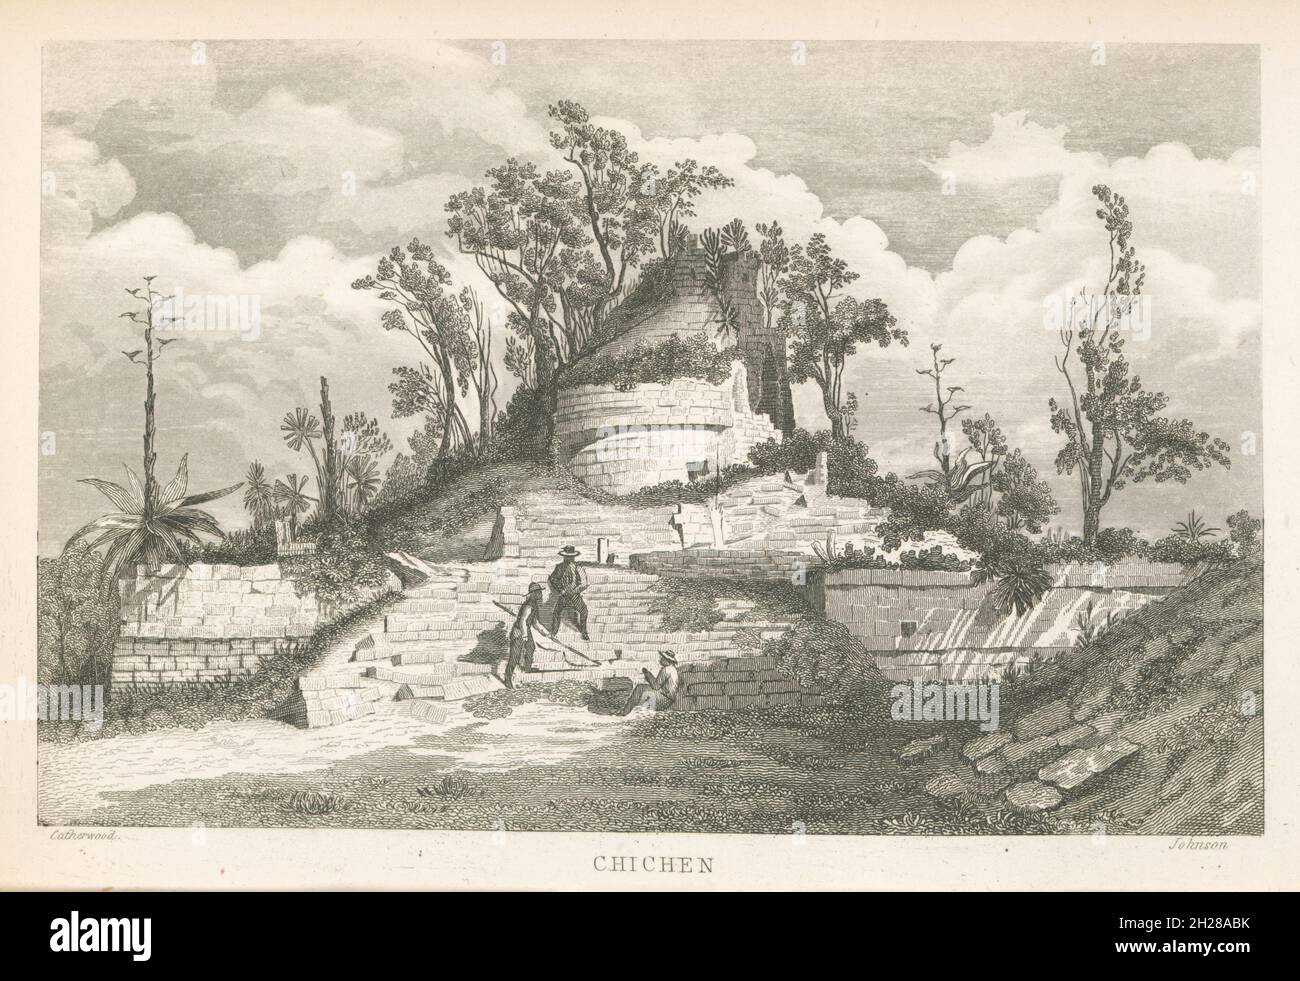 Bâtiment de l'observatoire astronomique Mayan circulaire (El Caracol) à Chichen Itza, Yucatan, Mexique, gravure de Frederick Catherwood du livre incidents of Travel in Yucatan par John Lloyd Stephens, publié pour la première fois en 1841 Banque D'Images